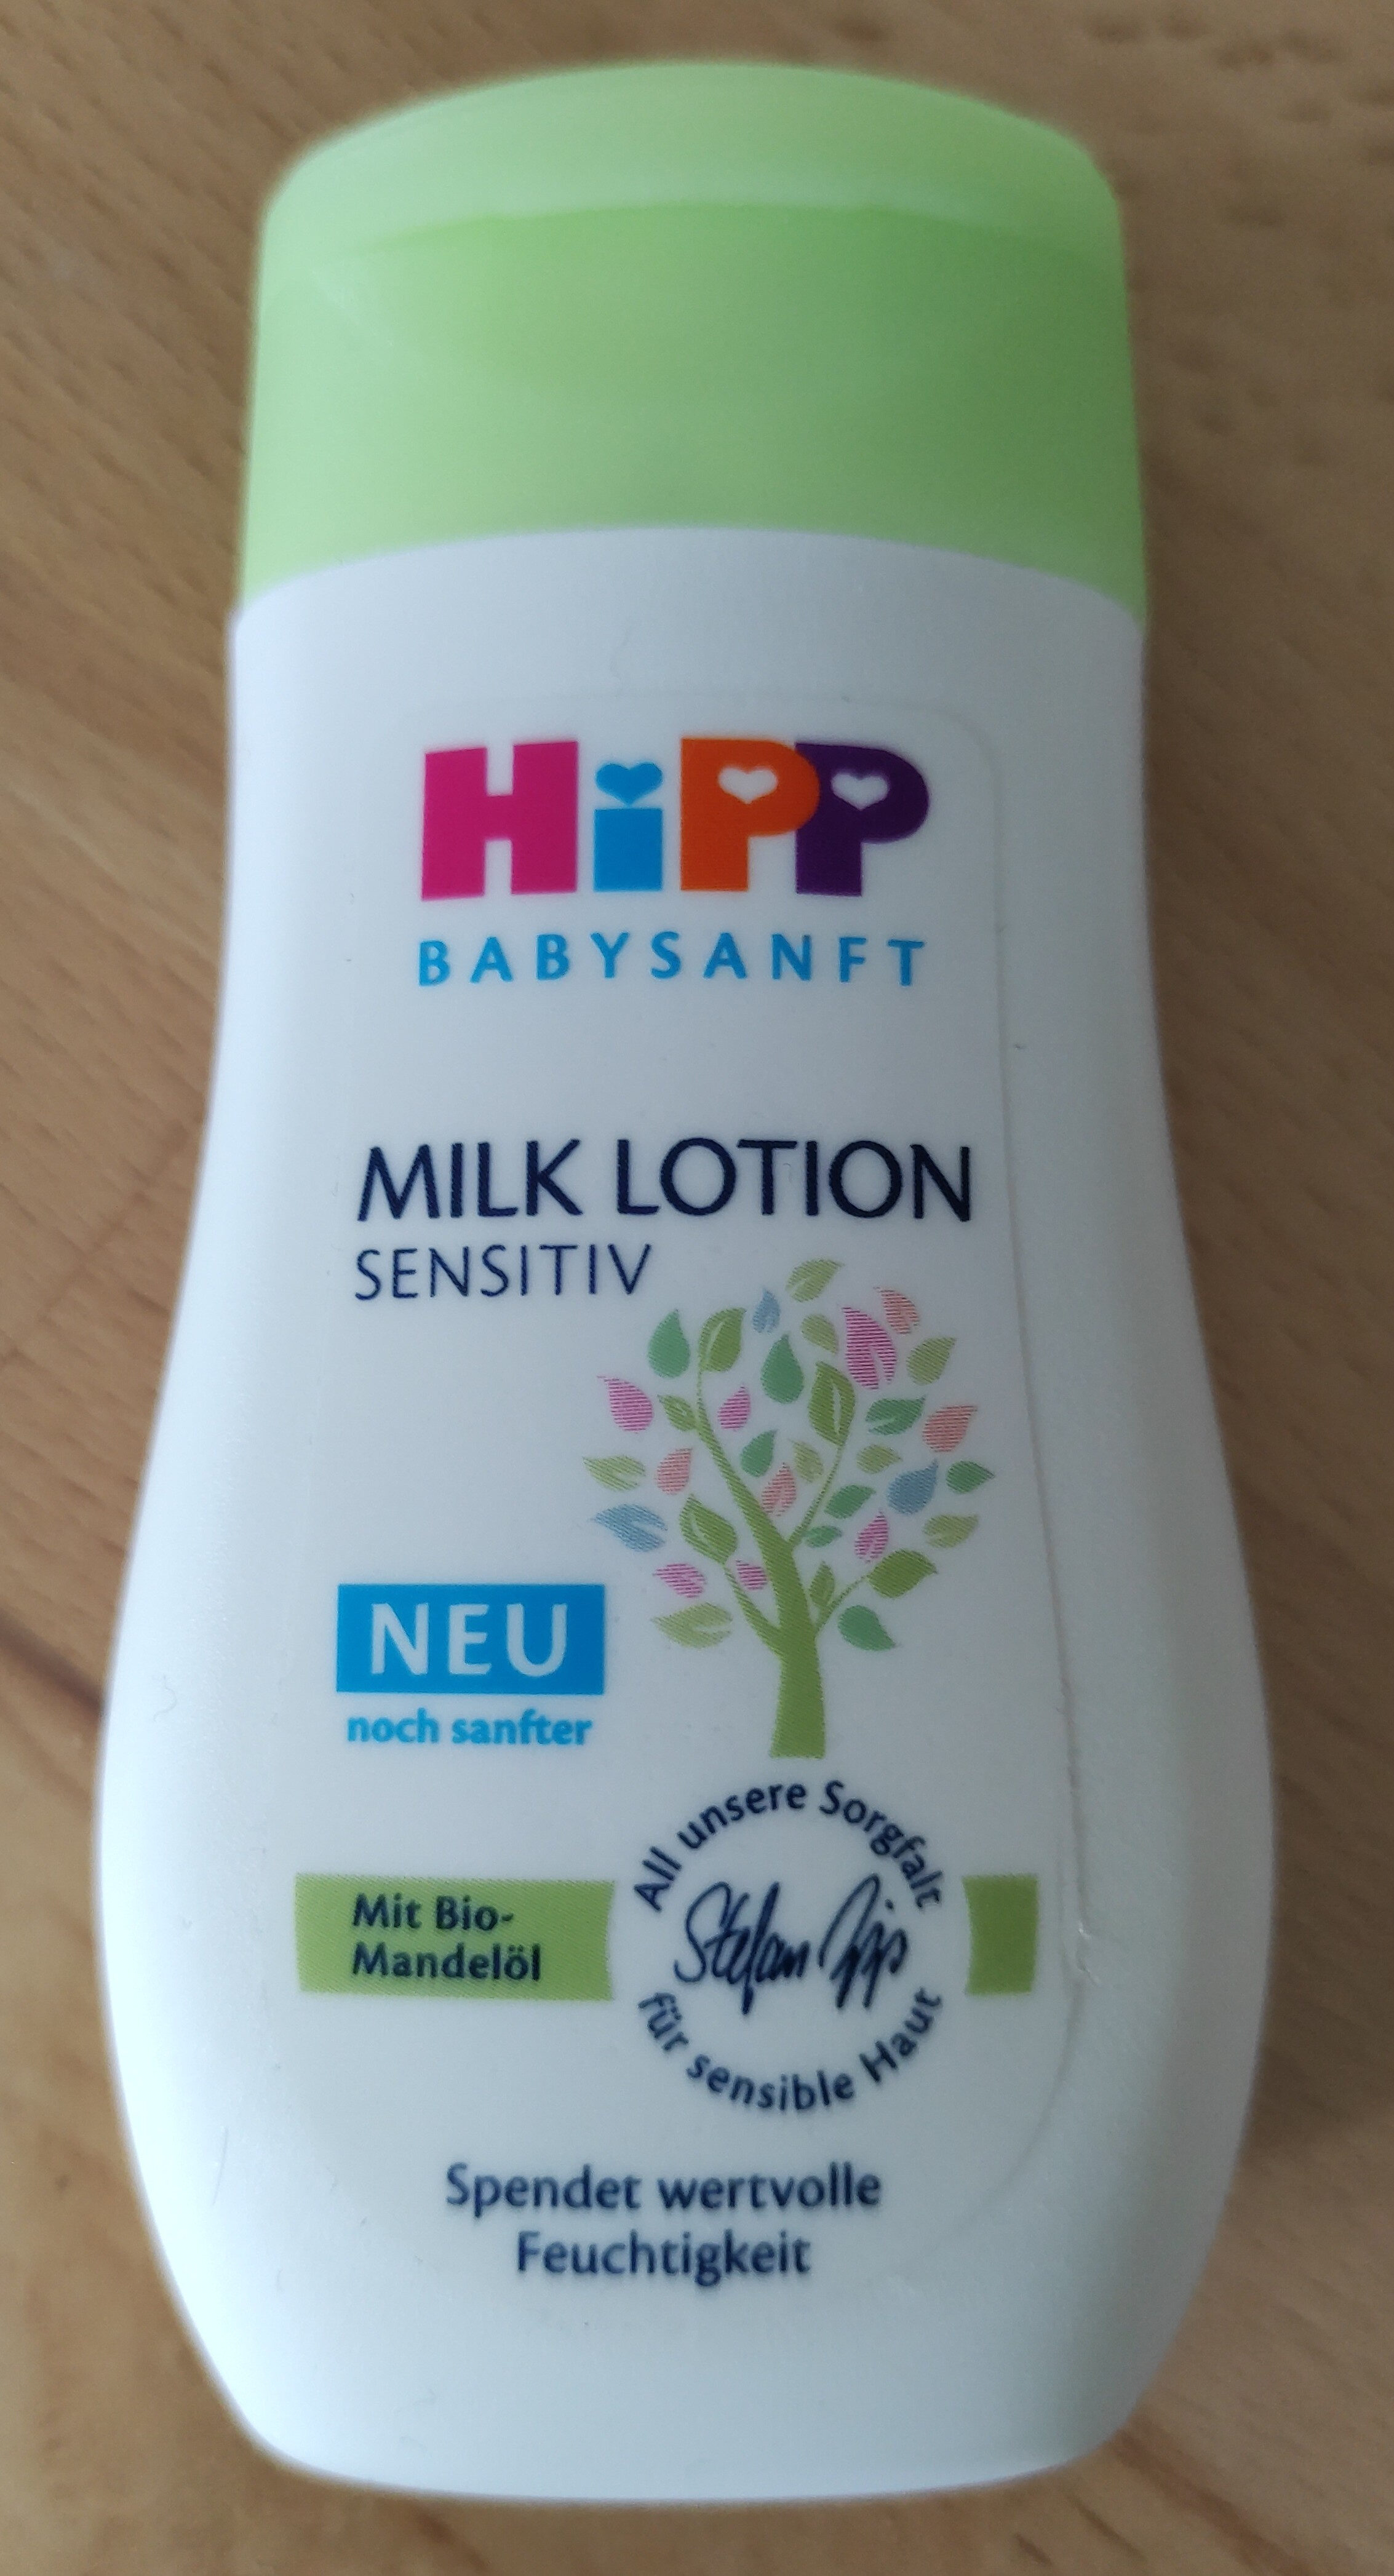 Milk Lotion Sensitiv - Product - de